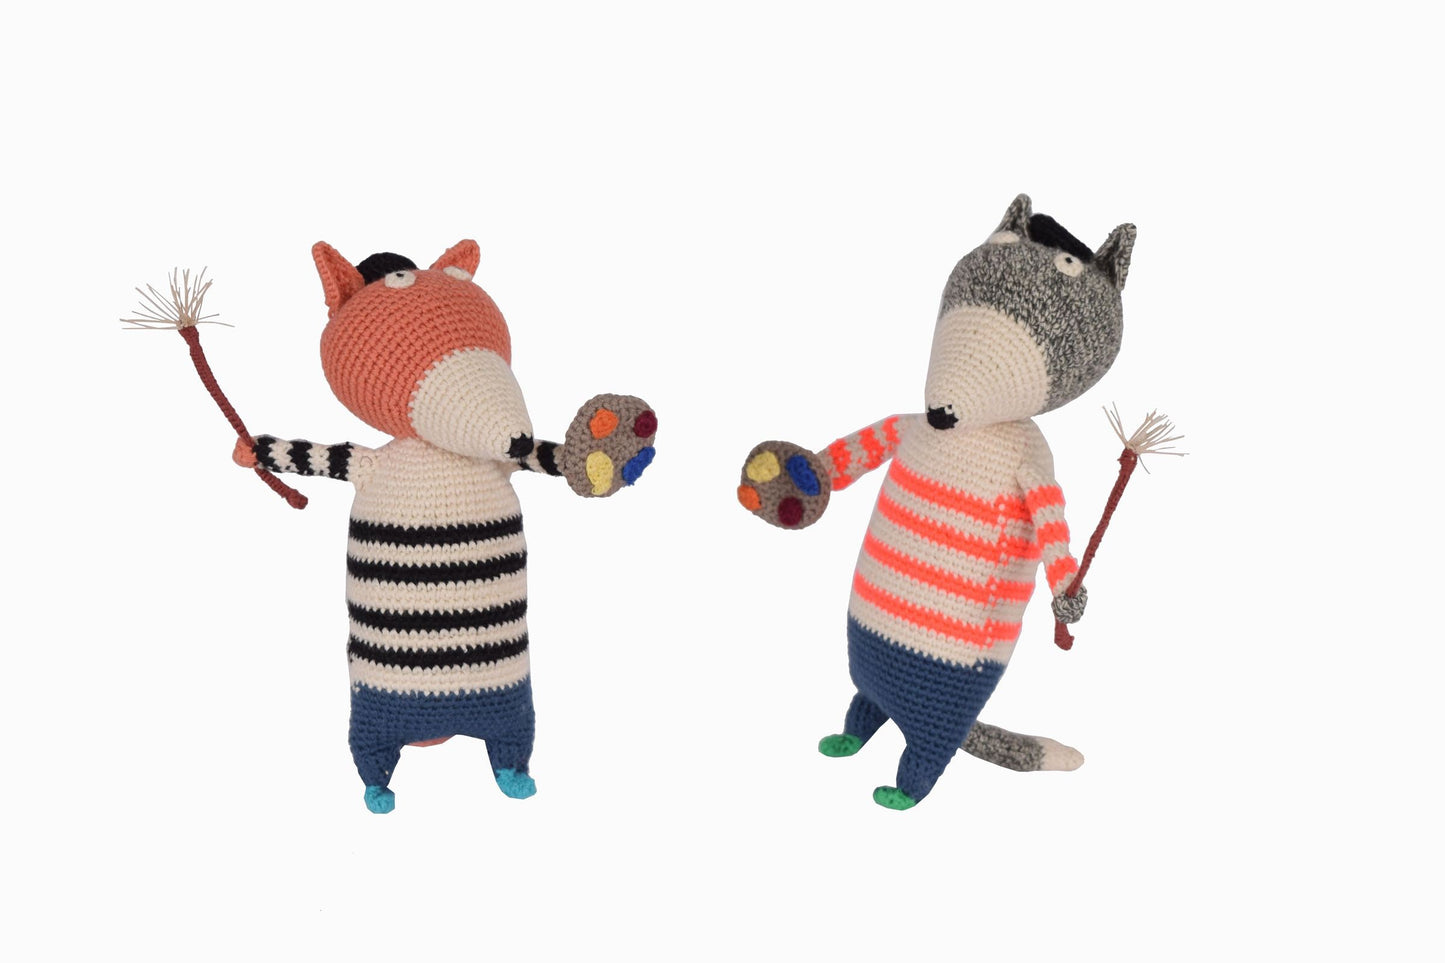 Crocheted fox with attitude, orange stripe